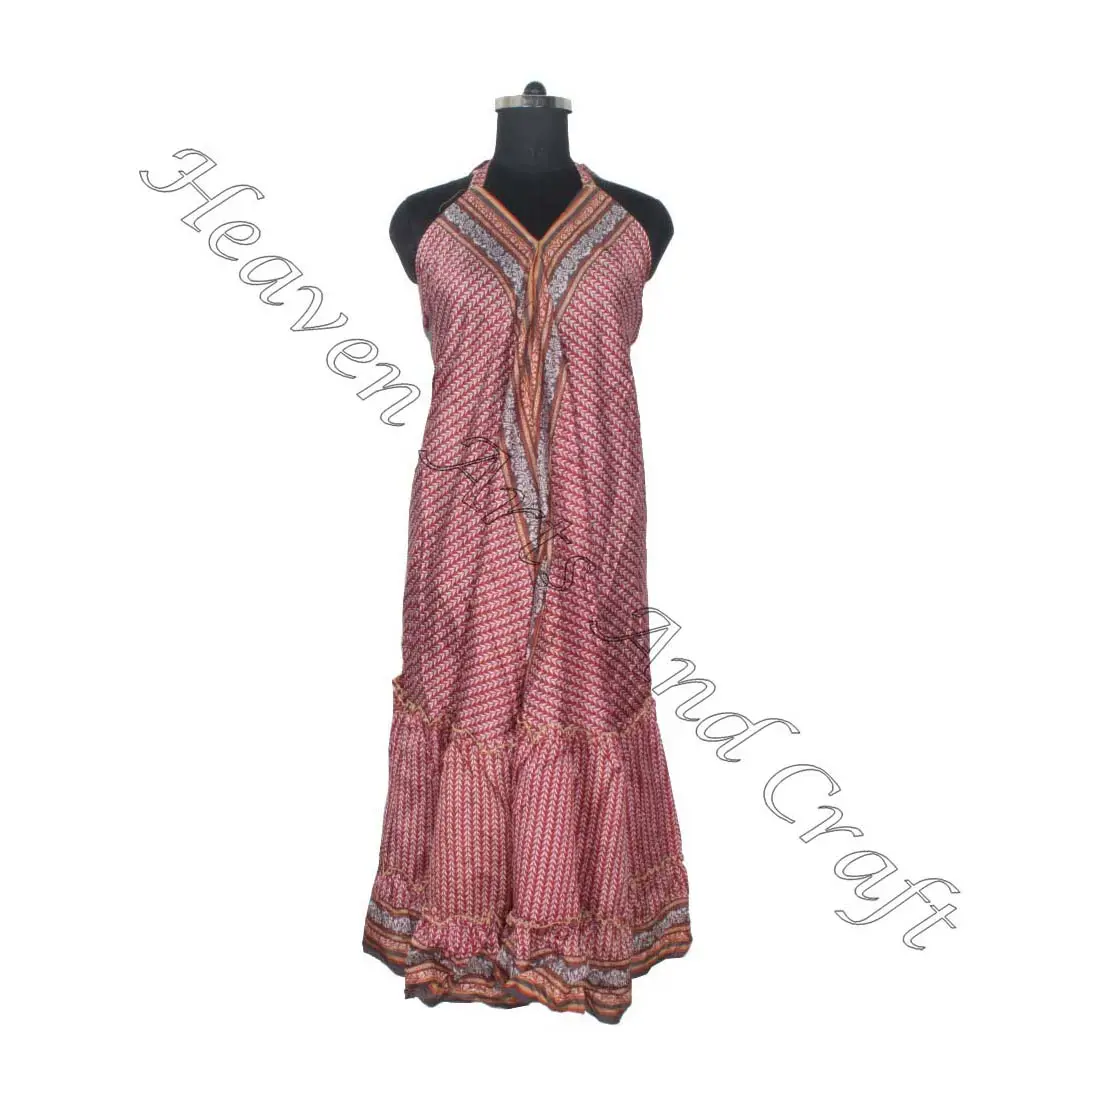 SD019 الساري / الساري / شري ملابس هندية وباكستانية من الهند هيبي بوهو مصنع وصانع ملابس النساء الساري الكلاسيكي